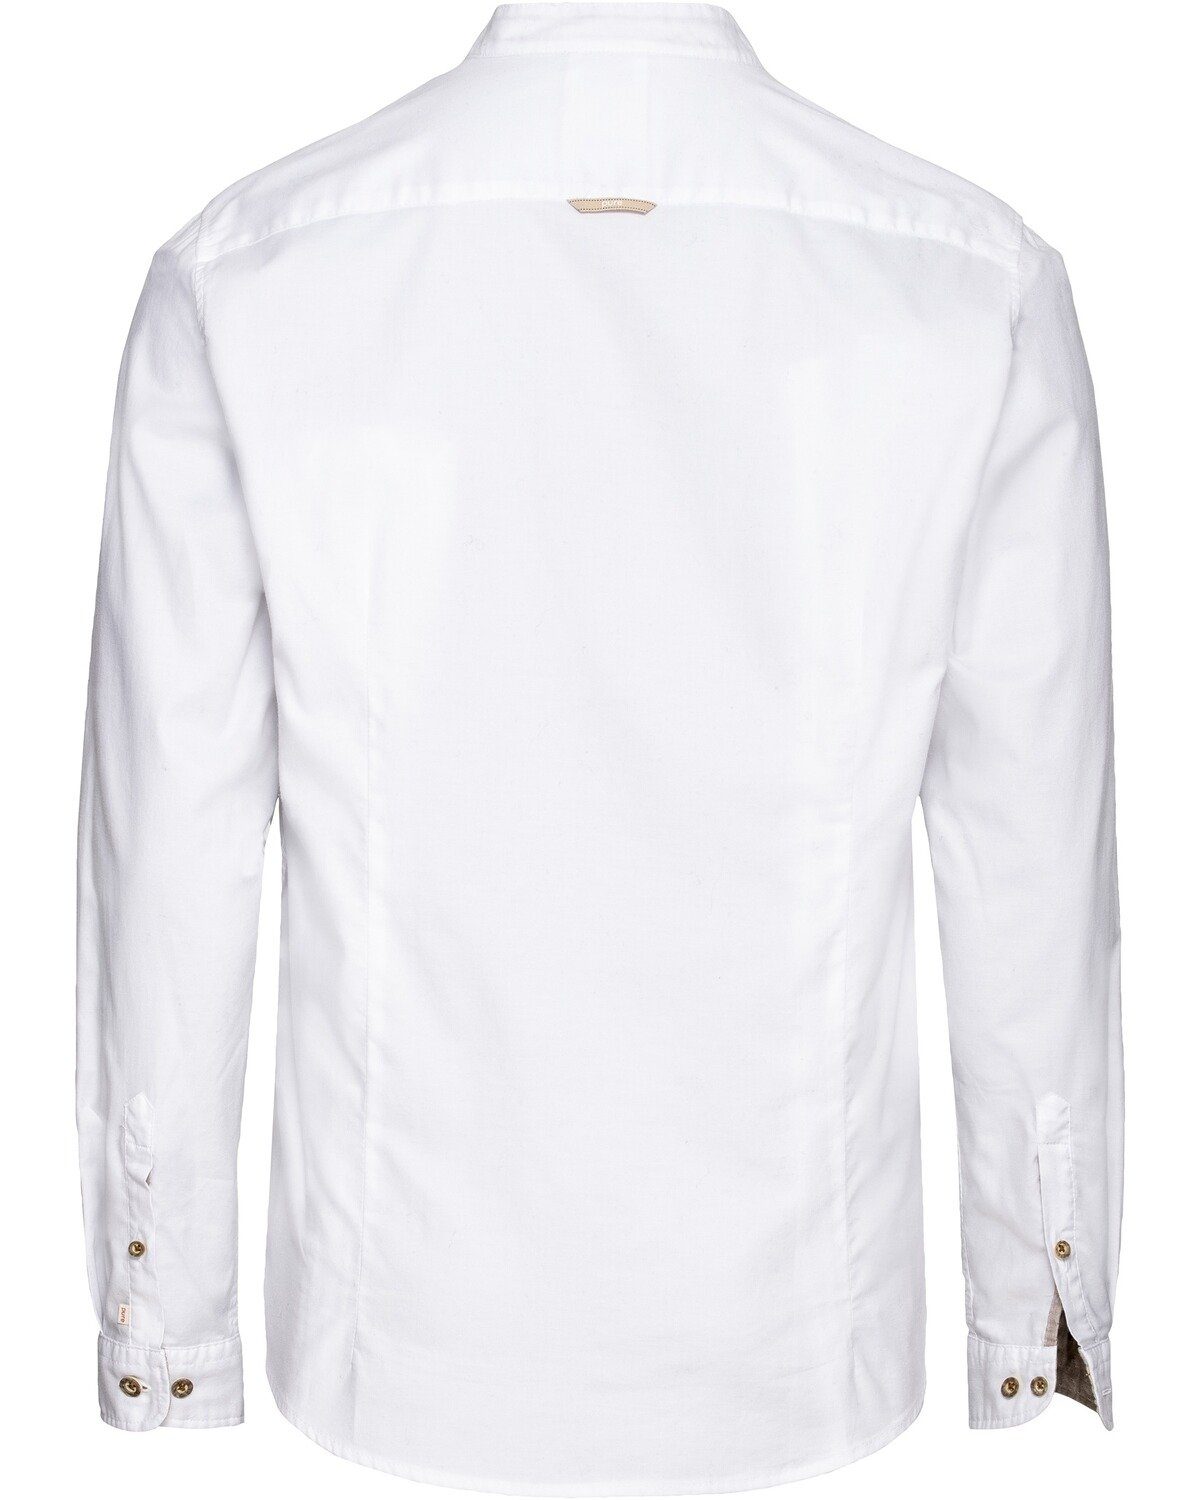 Oxfordhemd Pure mit Trachtenhemd Stehkragen Weiß